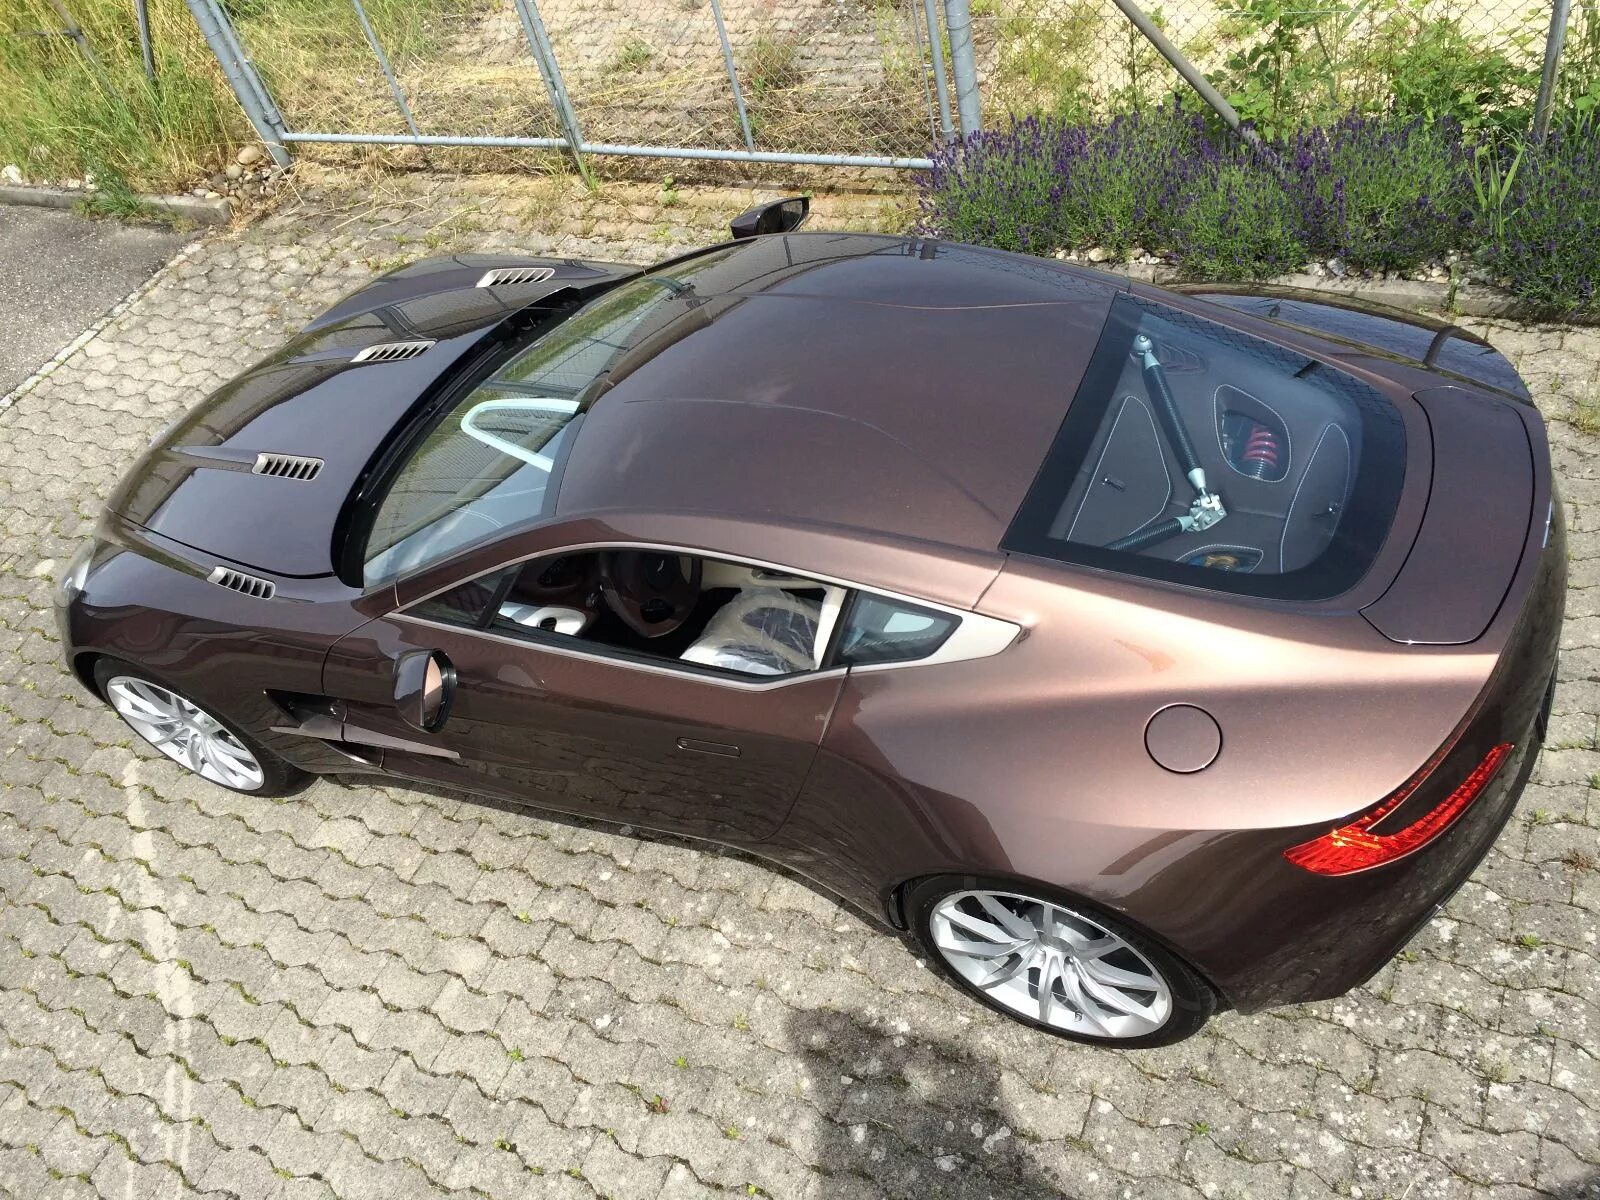 Автомобиль 500 000 рублей. Aston Martin one-77. Красивые машины недорогие. Интересные авто. Недорогая качественная машина.